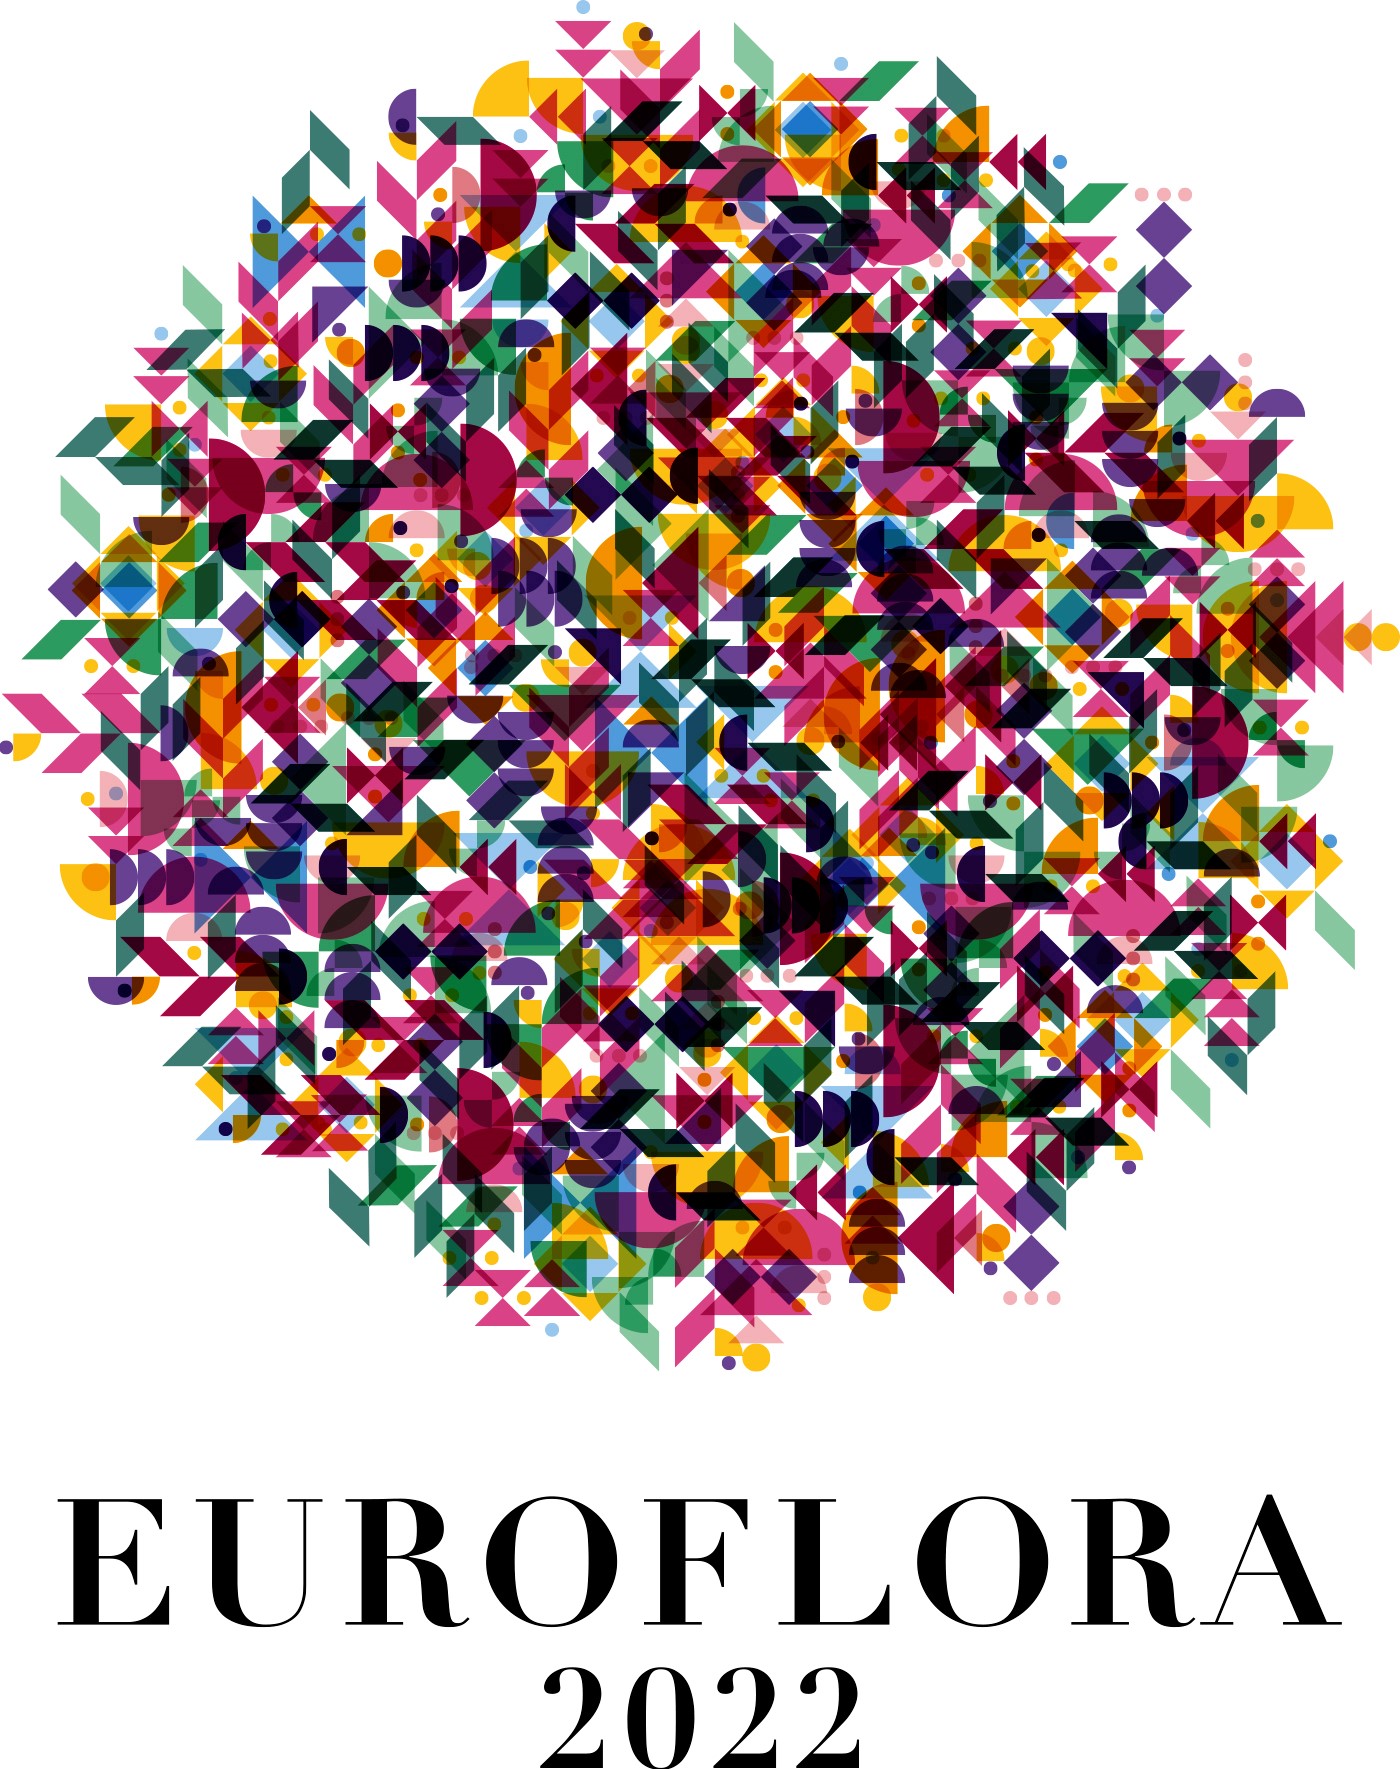 euroflora-2022-rarita-e-bellezza-a-genova